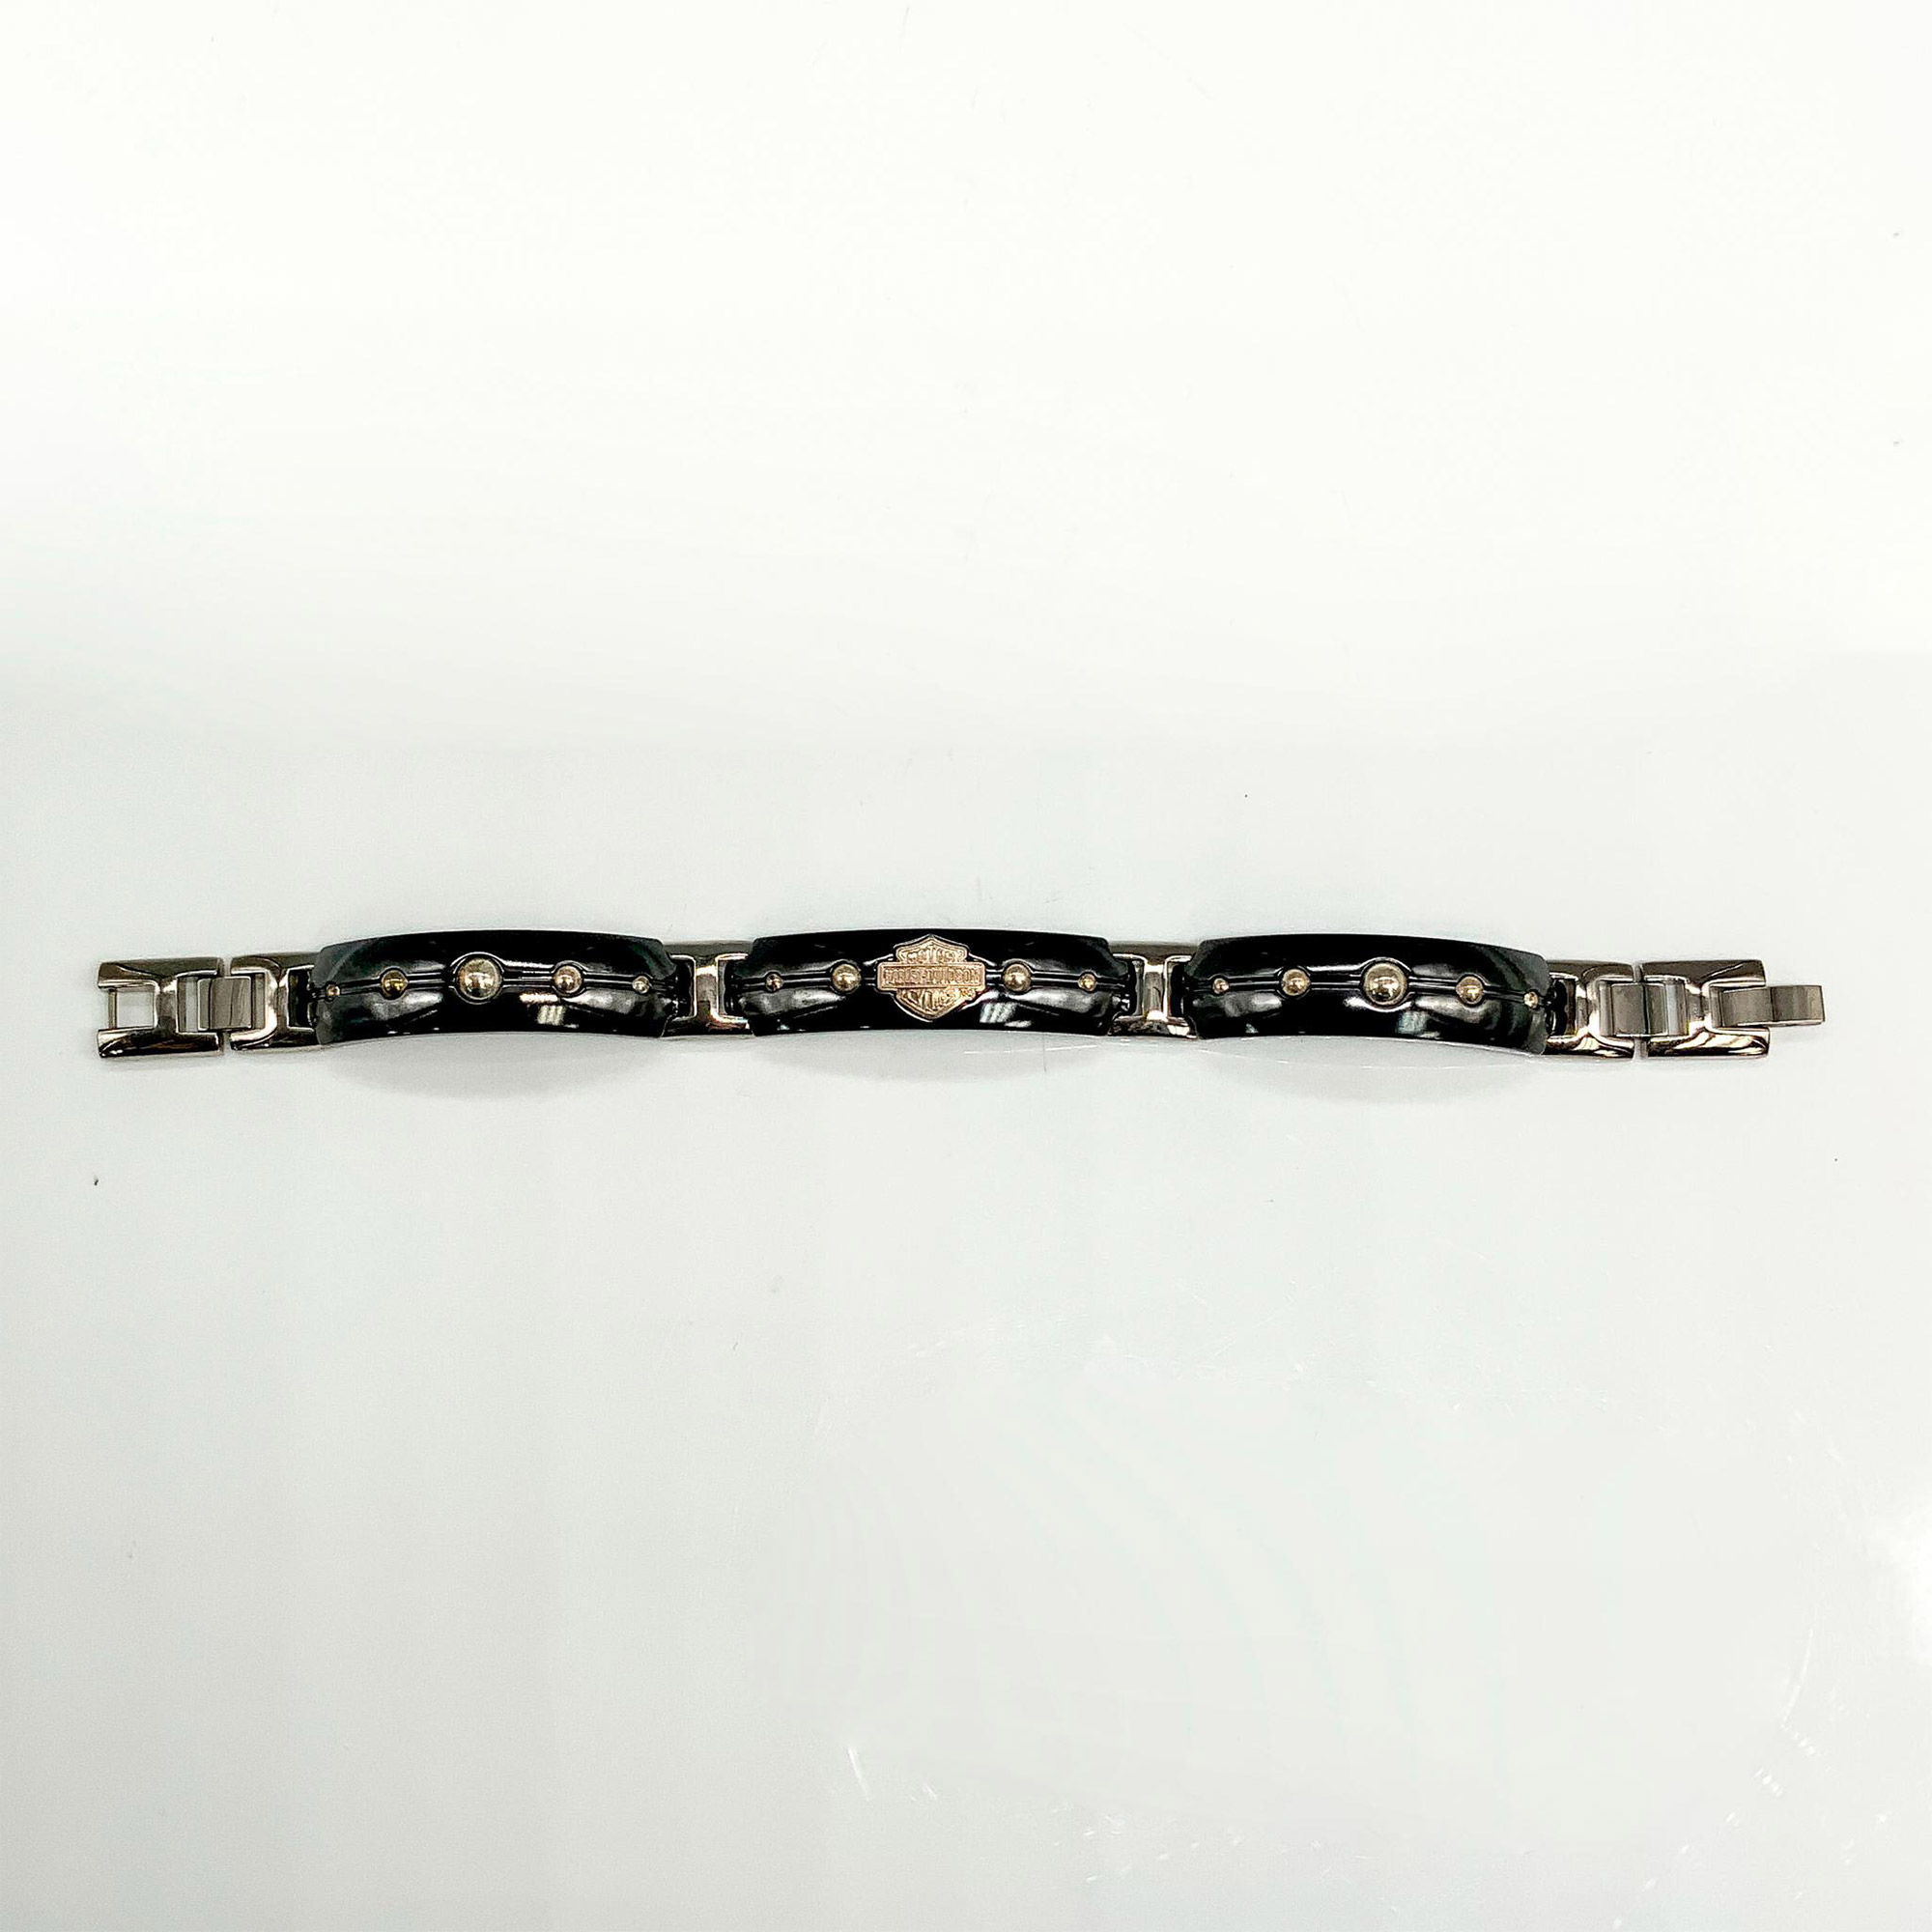 Harley Davidson Black and Silver Titanium Link Bracelet - Image 2 of 3